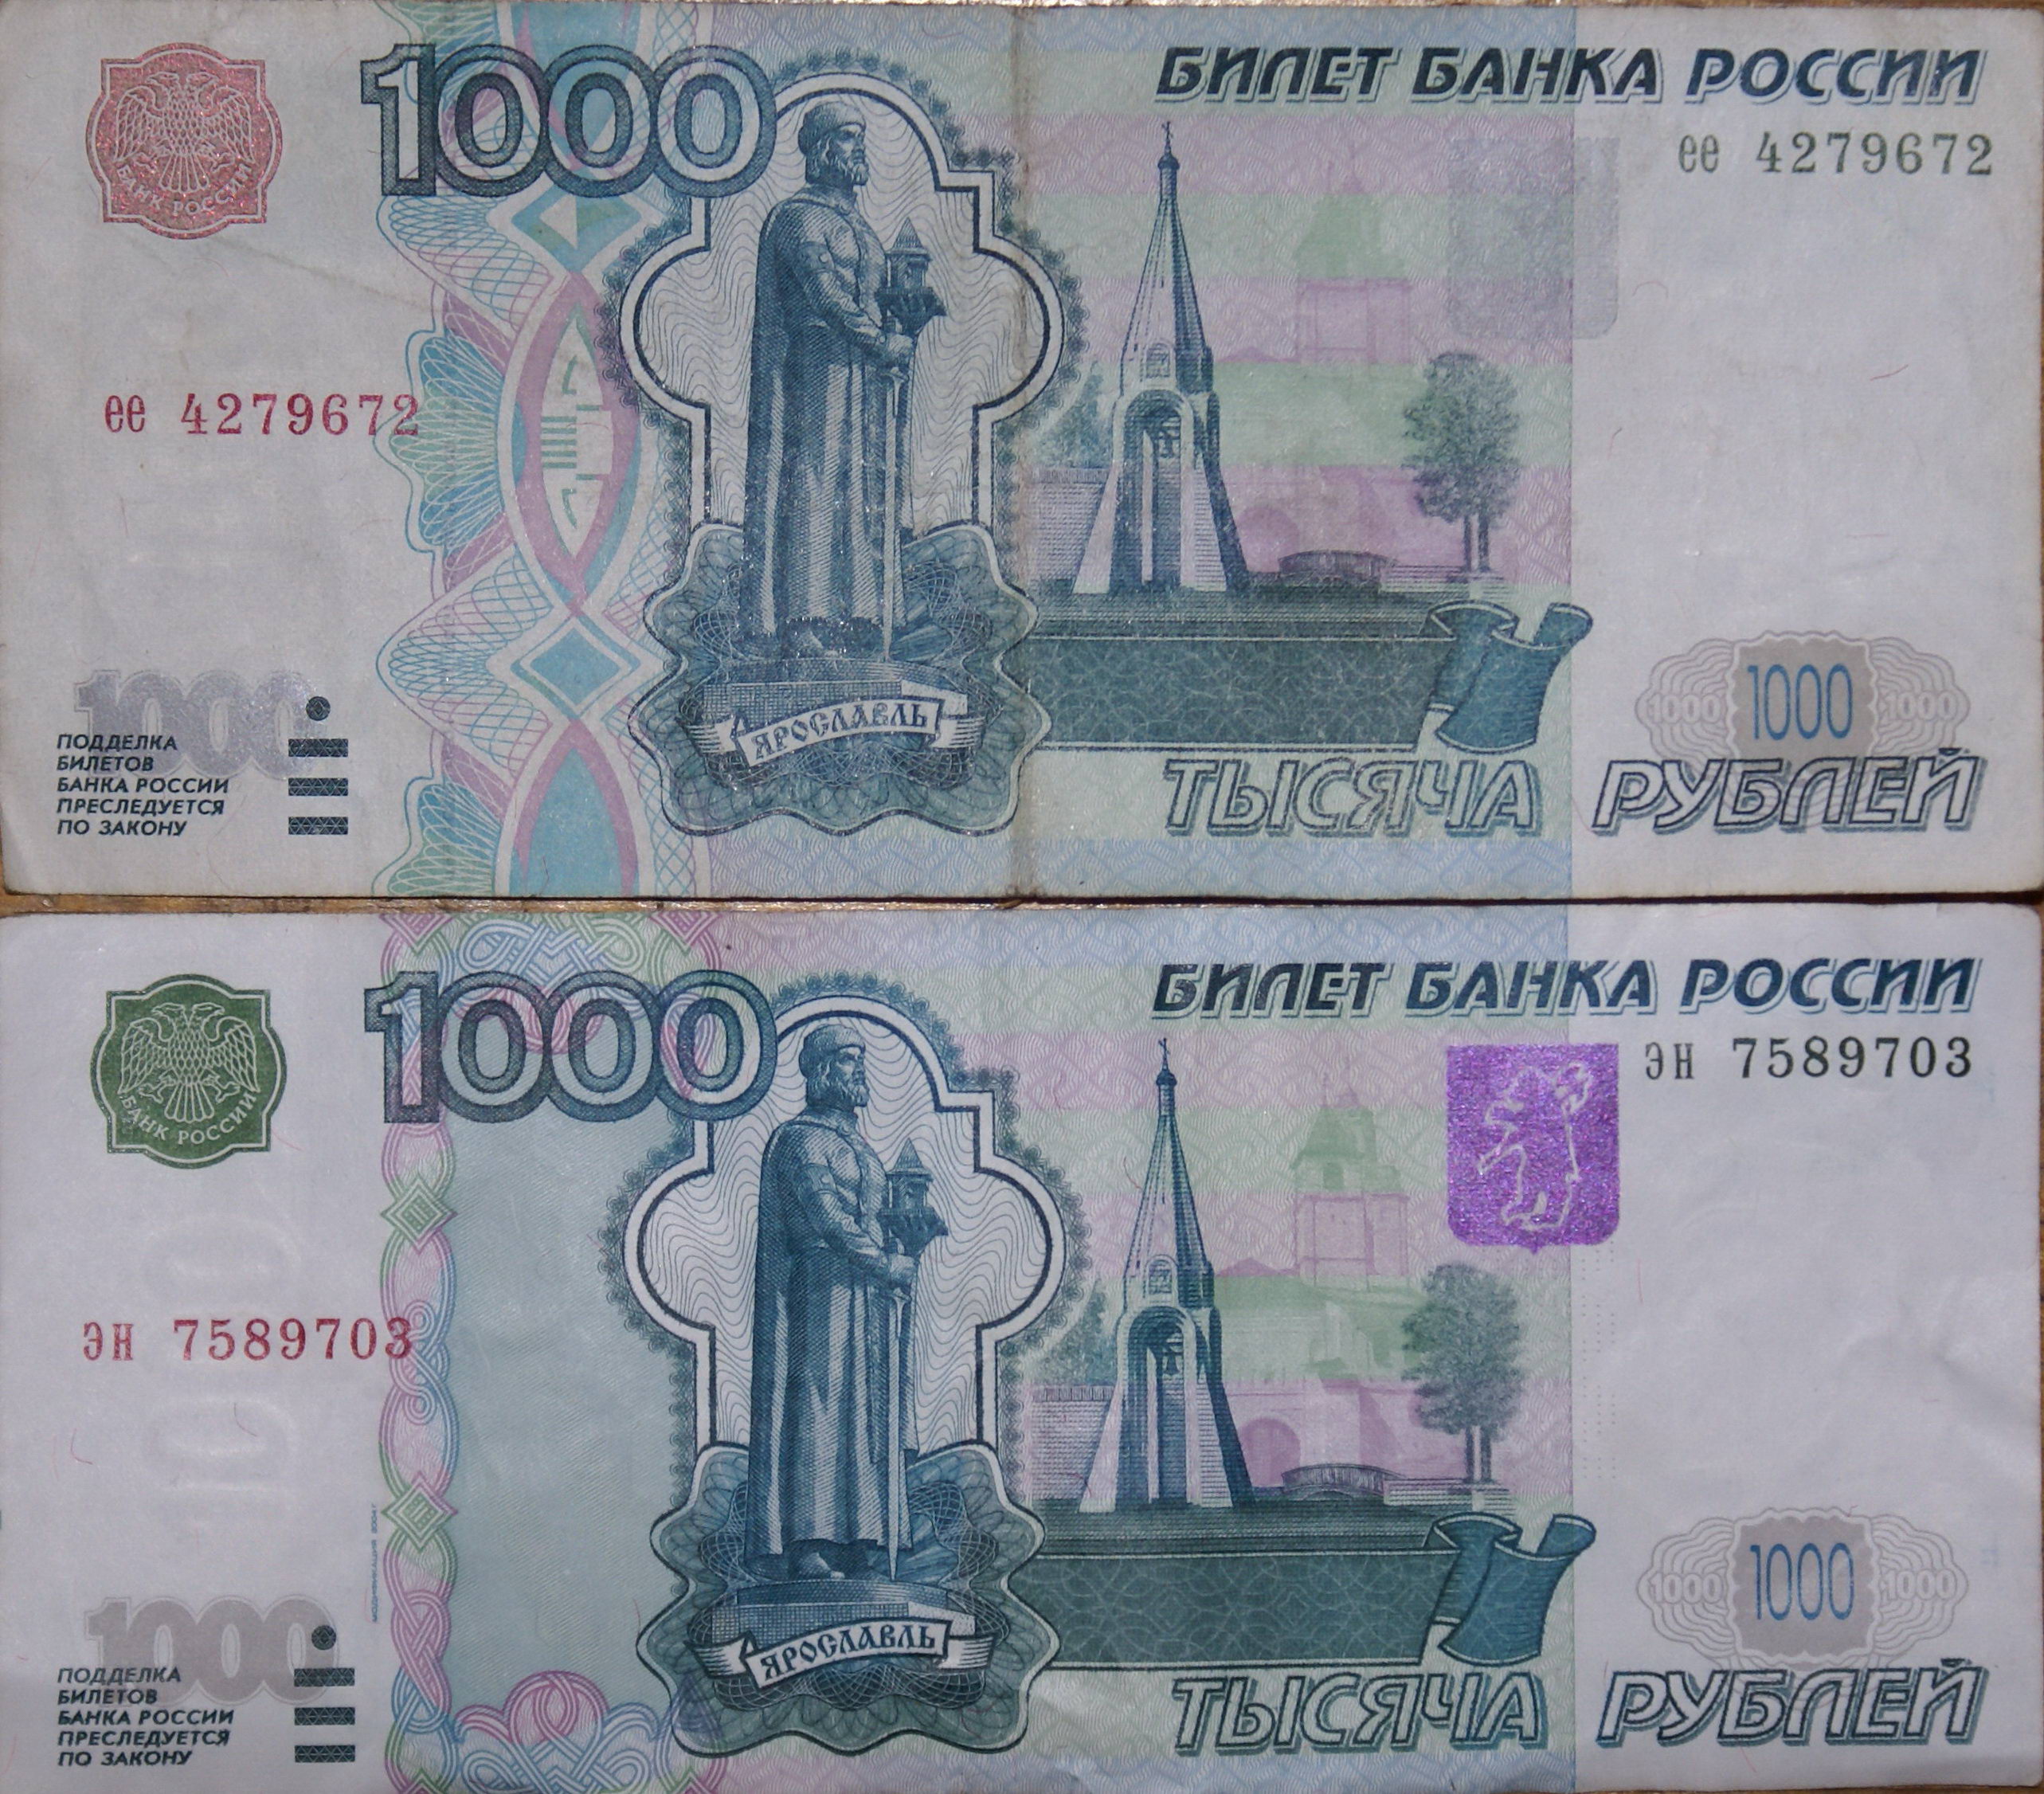 1000 рублей знаки. Тысячная купюра 1997 года. Купюра 1000 р 1997 года. Купюра 1000 рублей старого образца 1997. 1000 Купюра 1997 года старого образца.